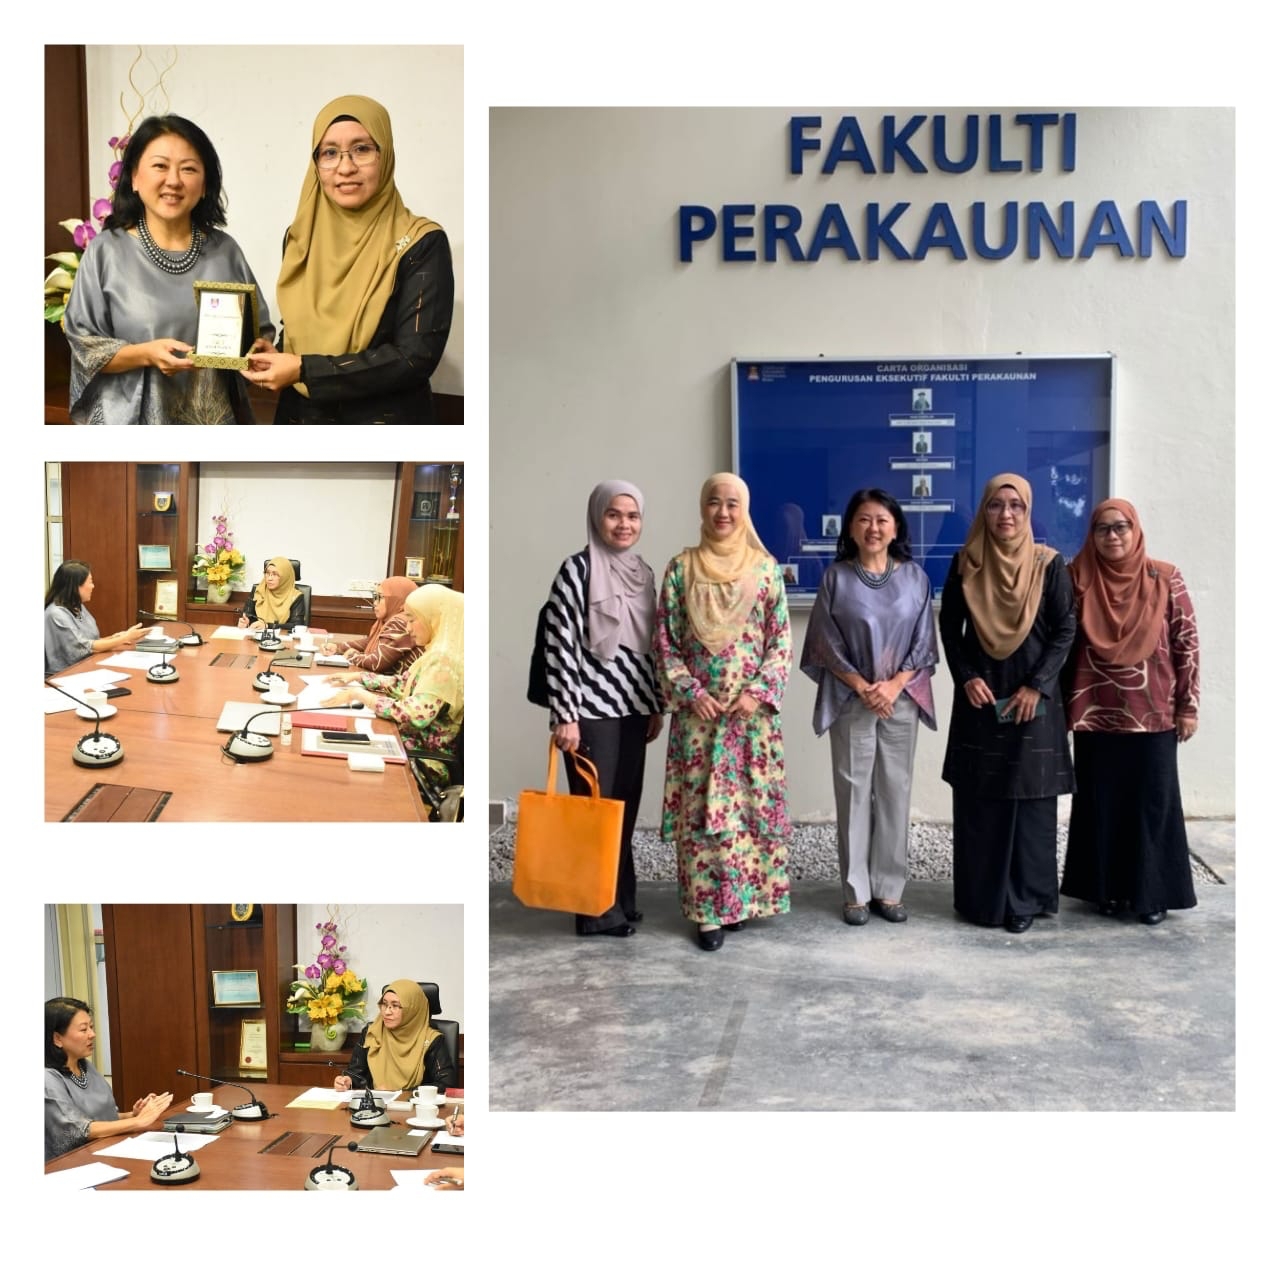 Kunjungan ICAEW Malaysia di Fakulti Perakaunan